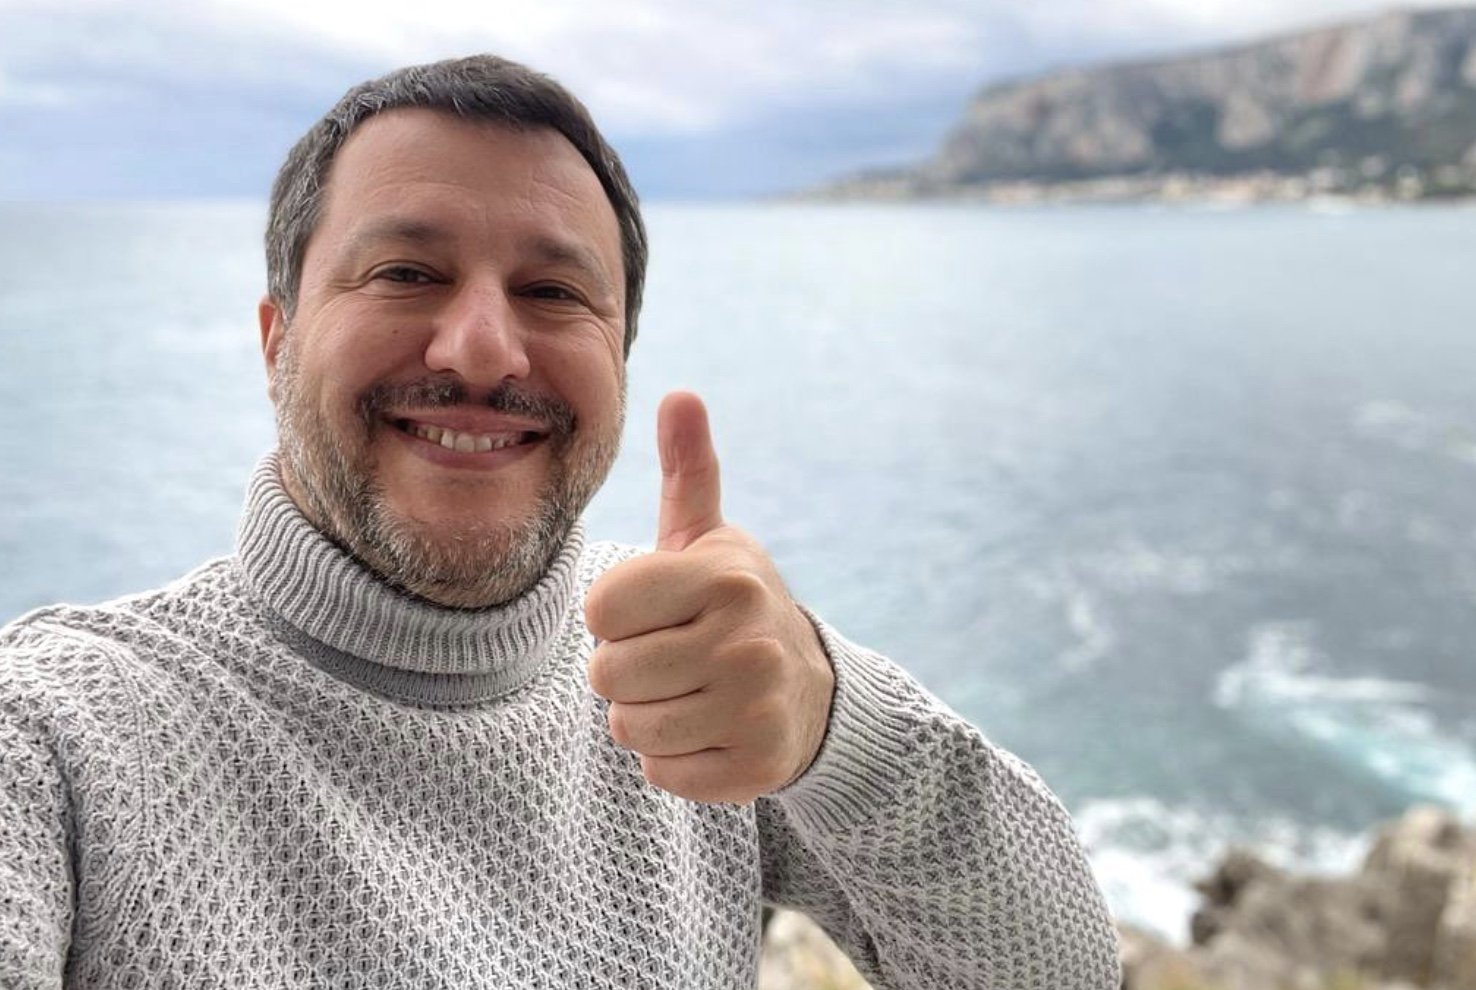 Salvini bertinotti